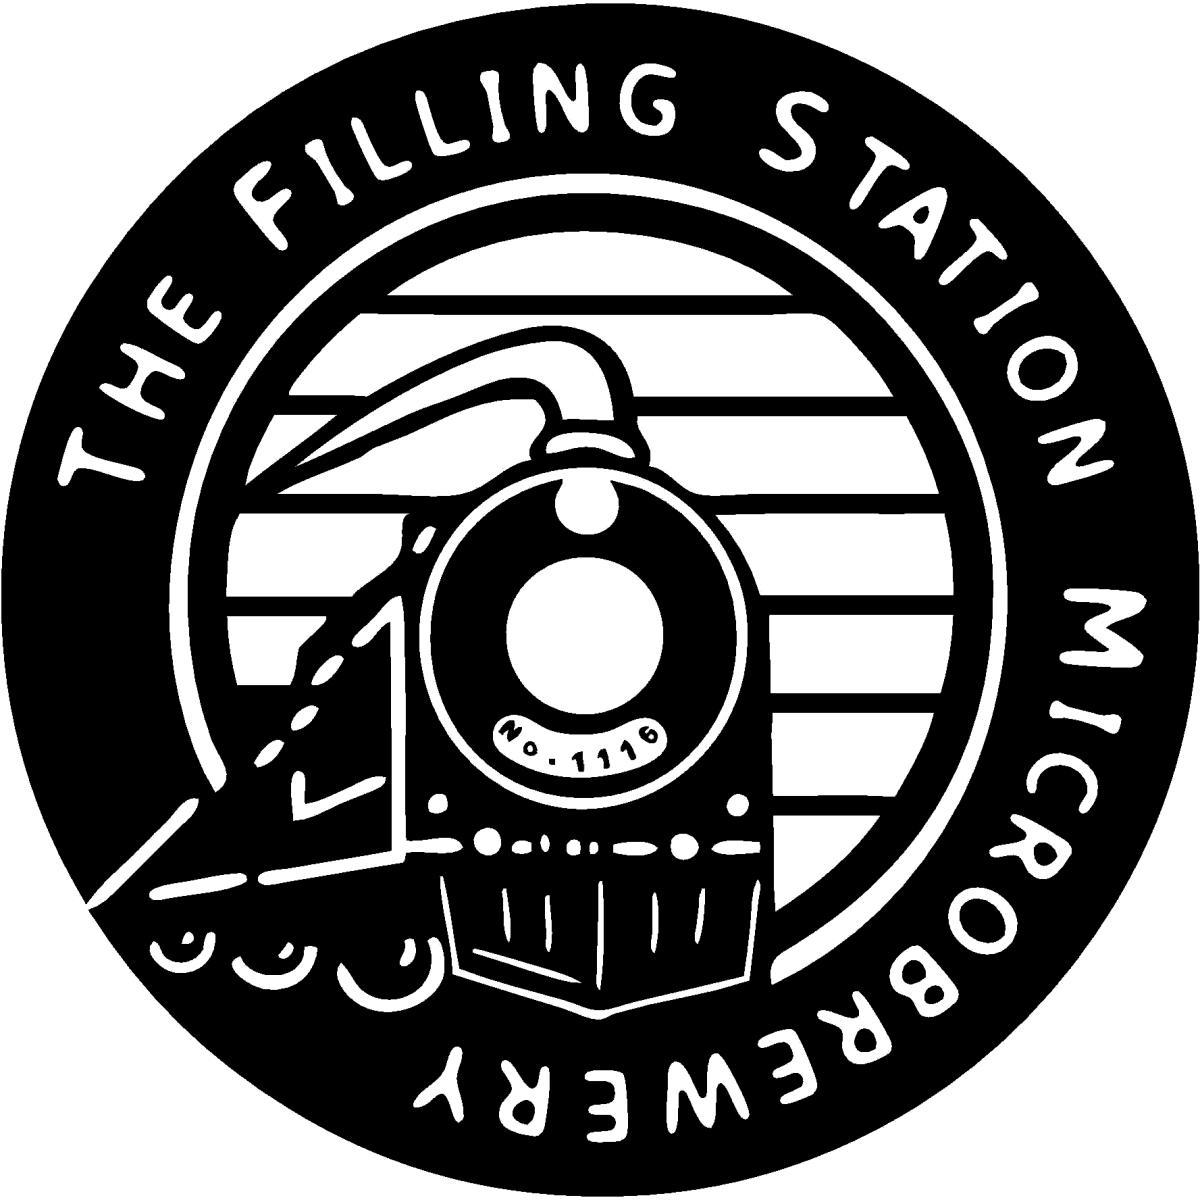 Filling Station